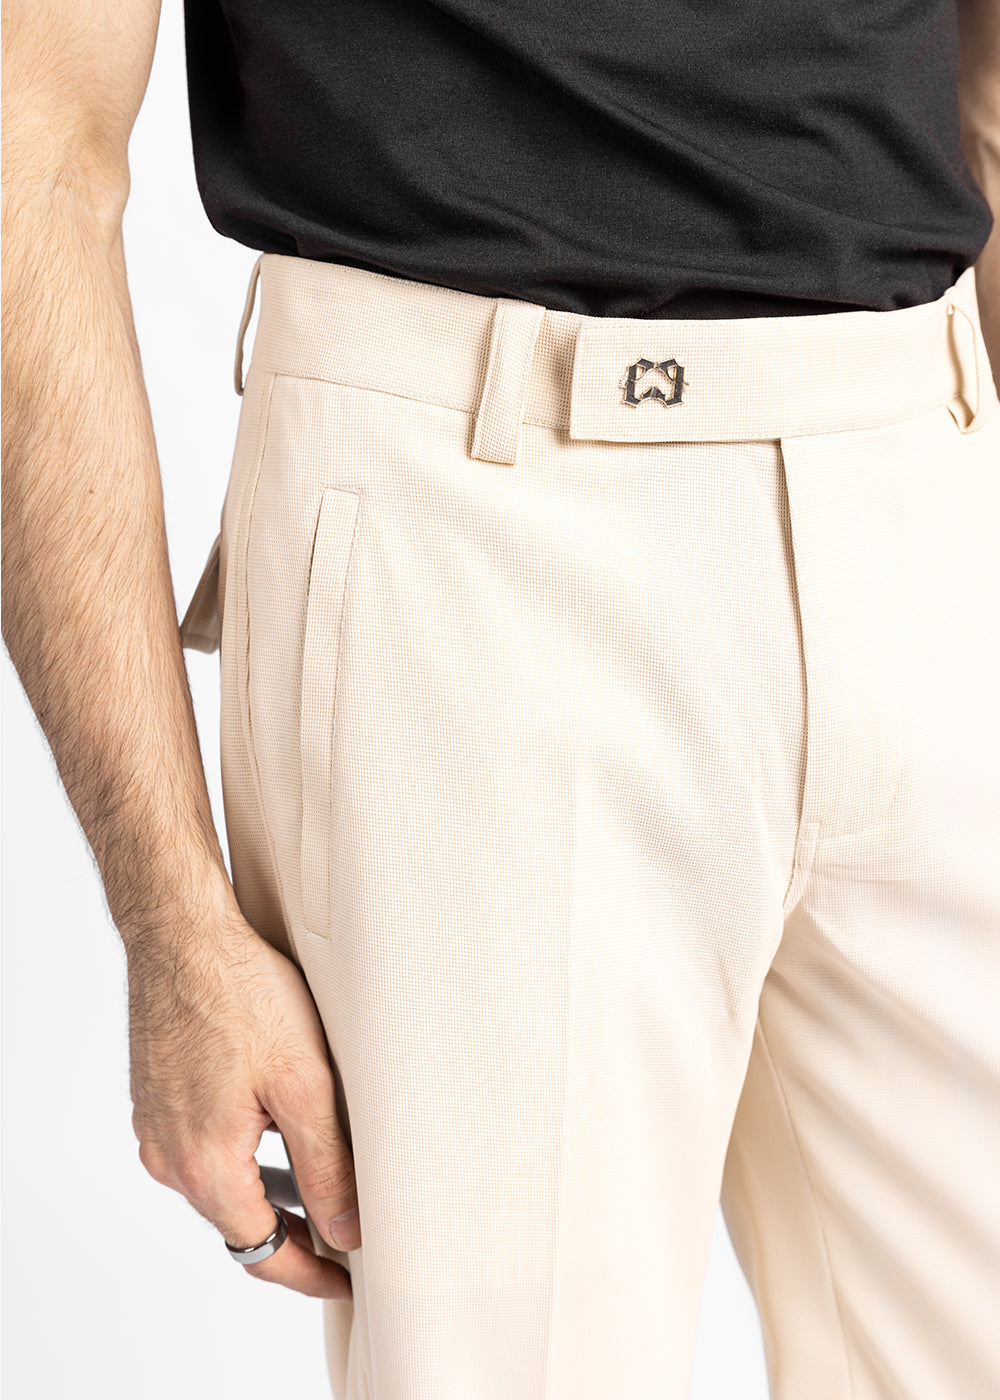 White Lounge Pants - Waffle Knit Pants - Wide-Leg Lounge Pants - Lulus